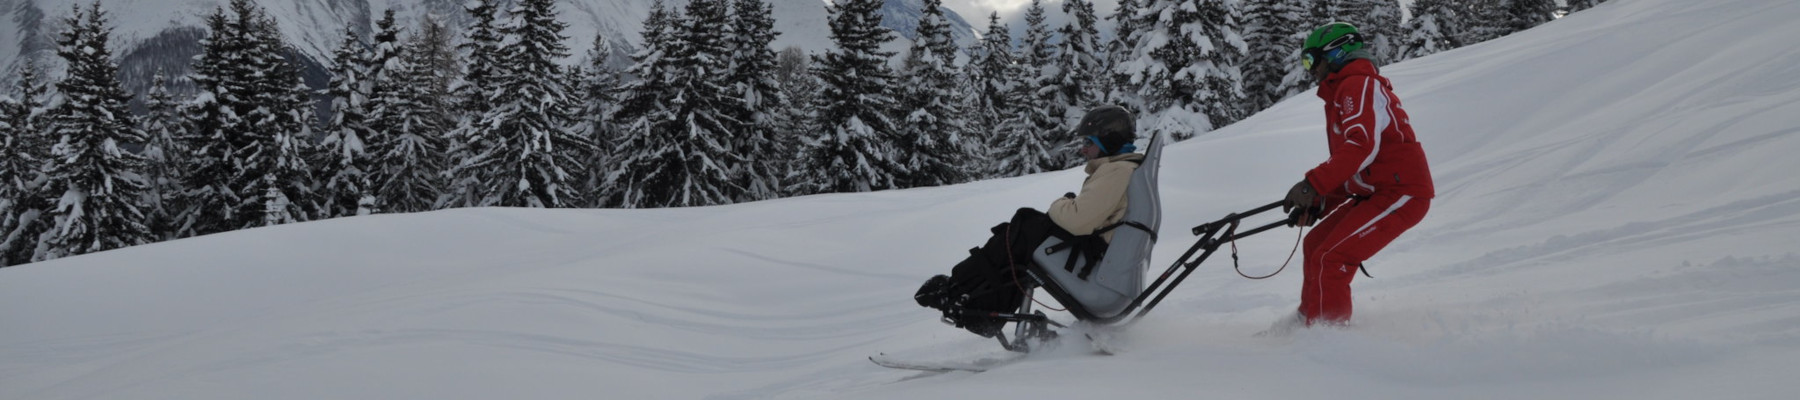 Schnee. Eine Person sitzt auf einem Ski-Sessel. Eine zweite Person steuert.